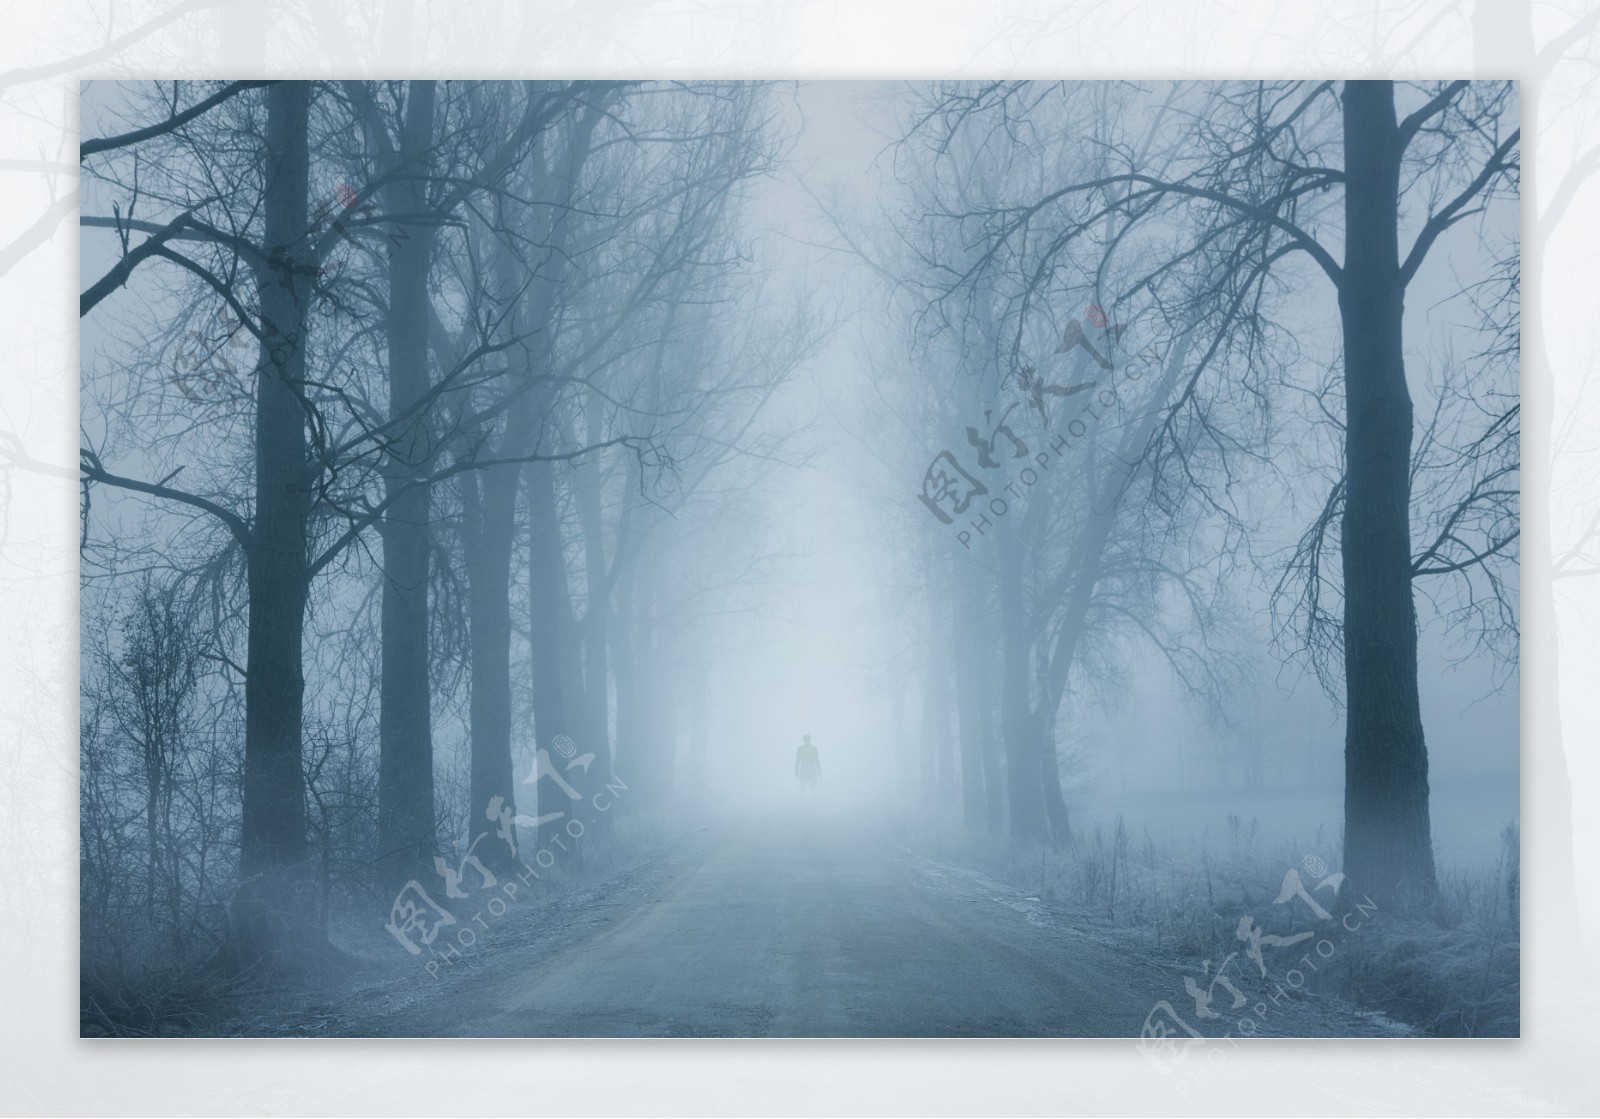 清晨白雾笼罩的公路风景图片